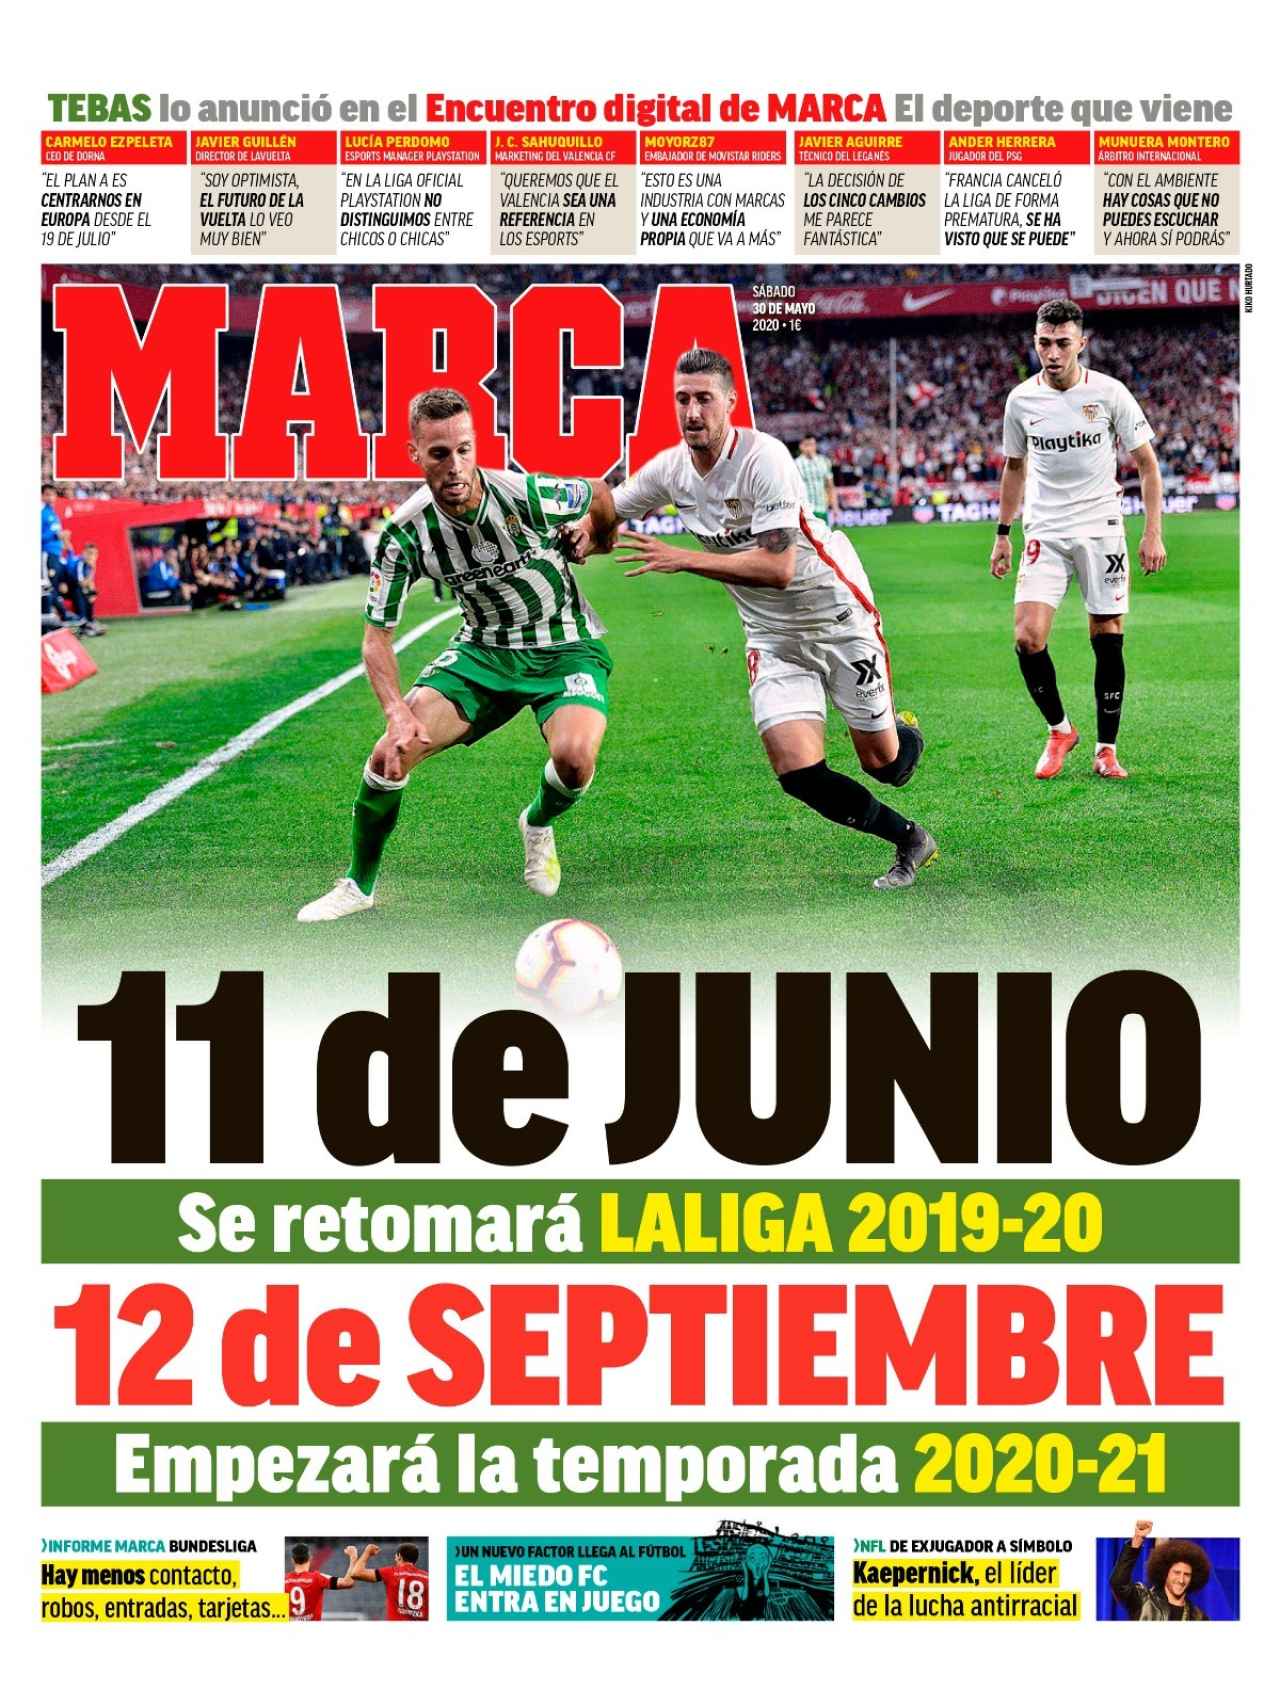 La portada del diario MARCA (30/05/2020)